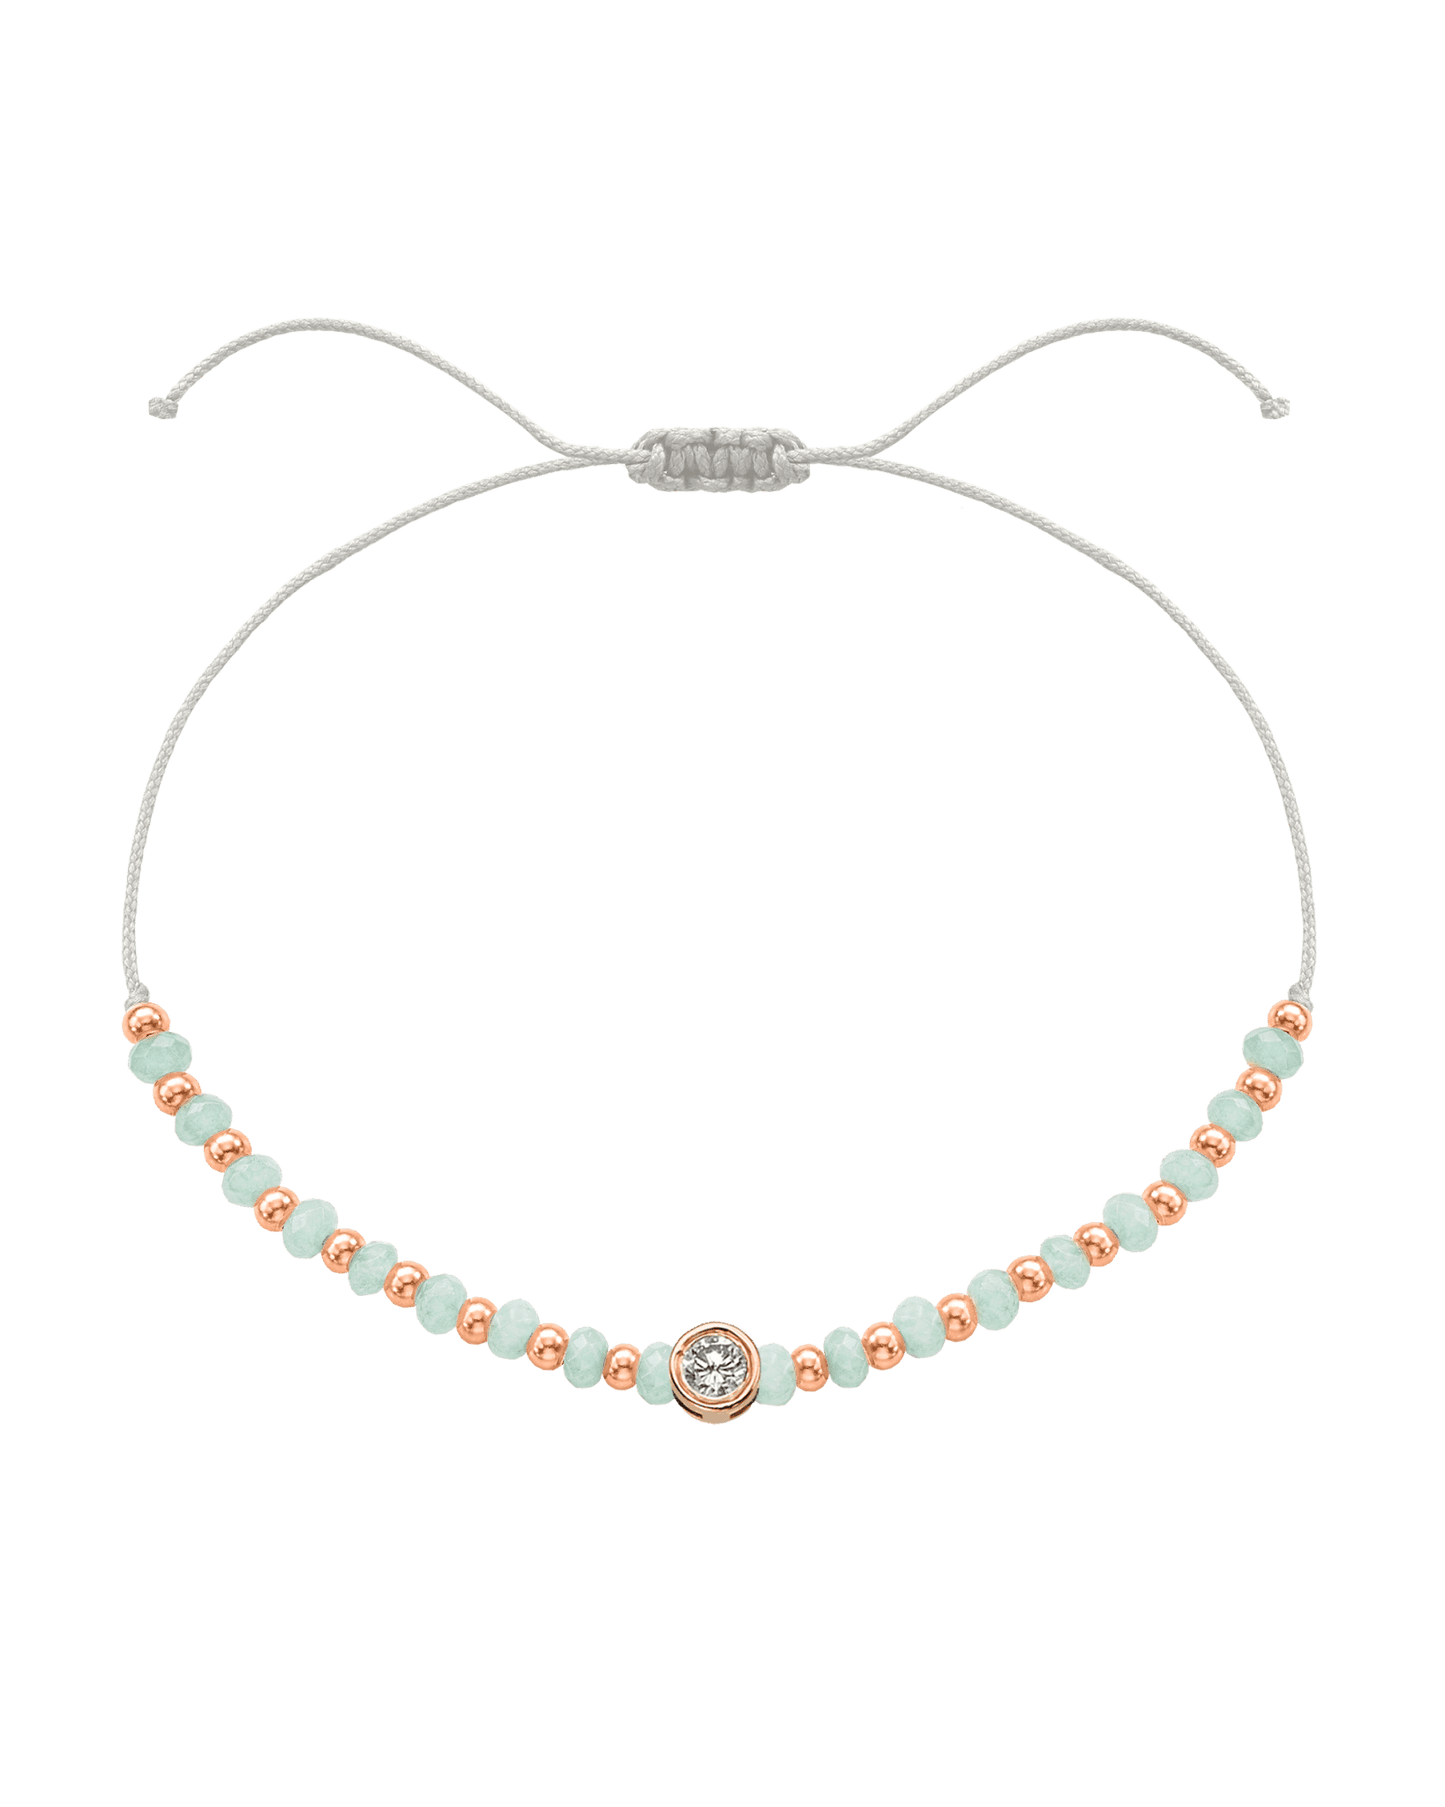 Apatite Gemstone String of Love Bracelet for Inspiration - 14K Rose Gold Bracelets 14K Solid Gold Pearl Large: 0.1ct 